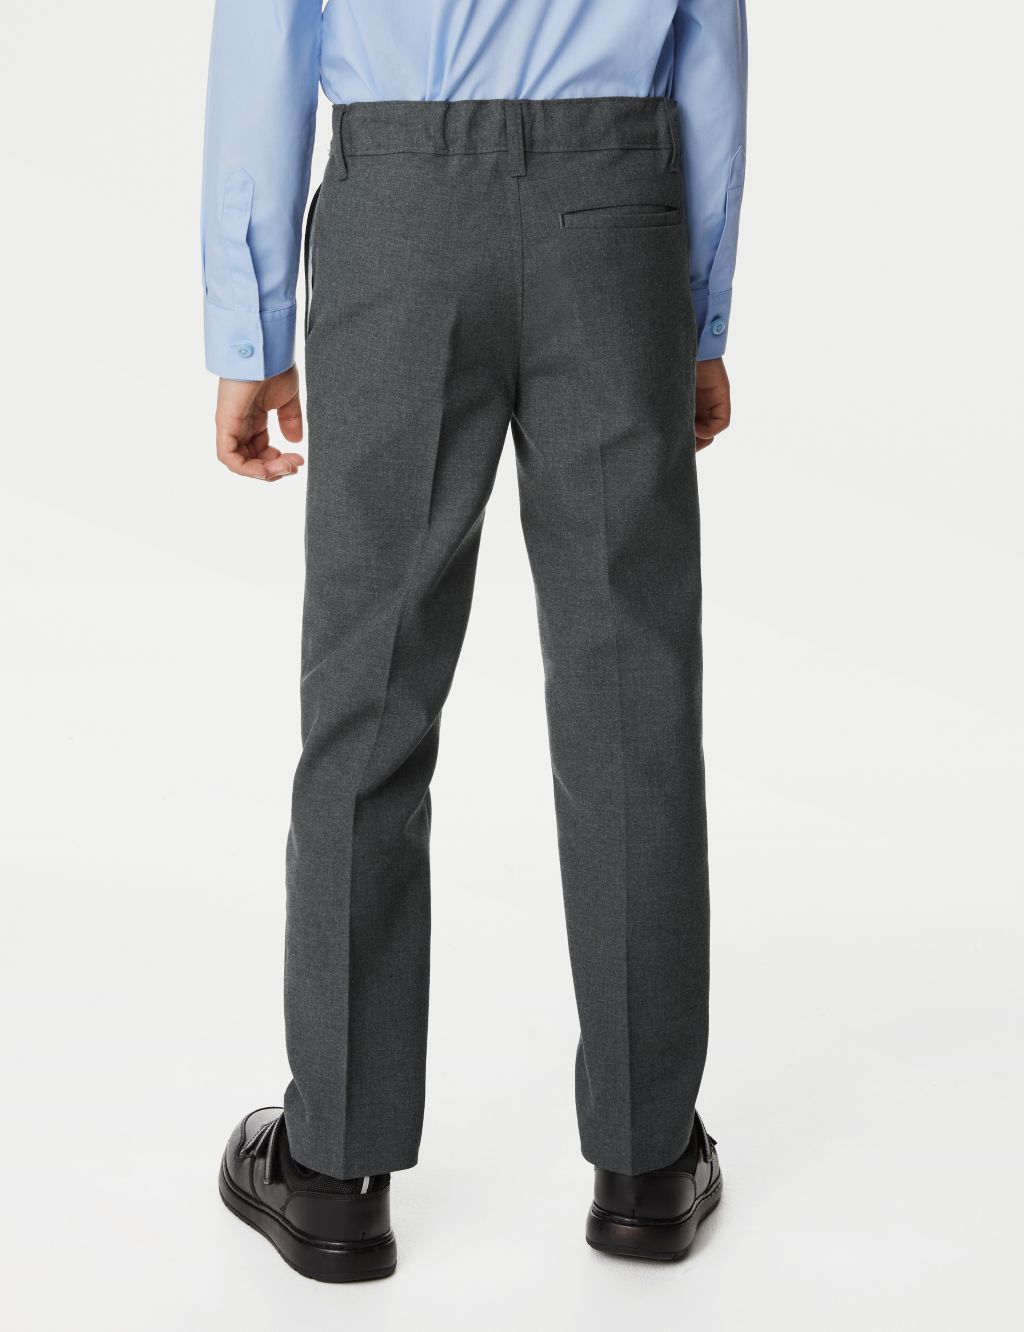 2pk Boys' Slim Leg Plus Waist School Trousers  (2-18 Yrs) image 4